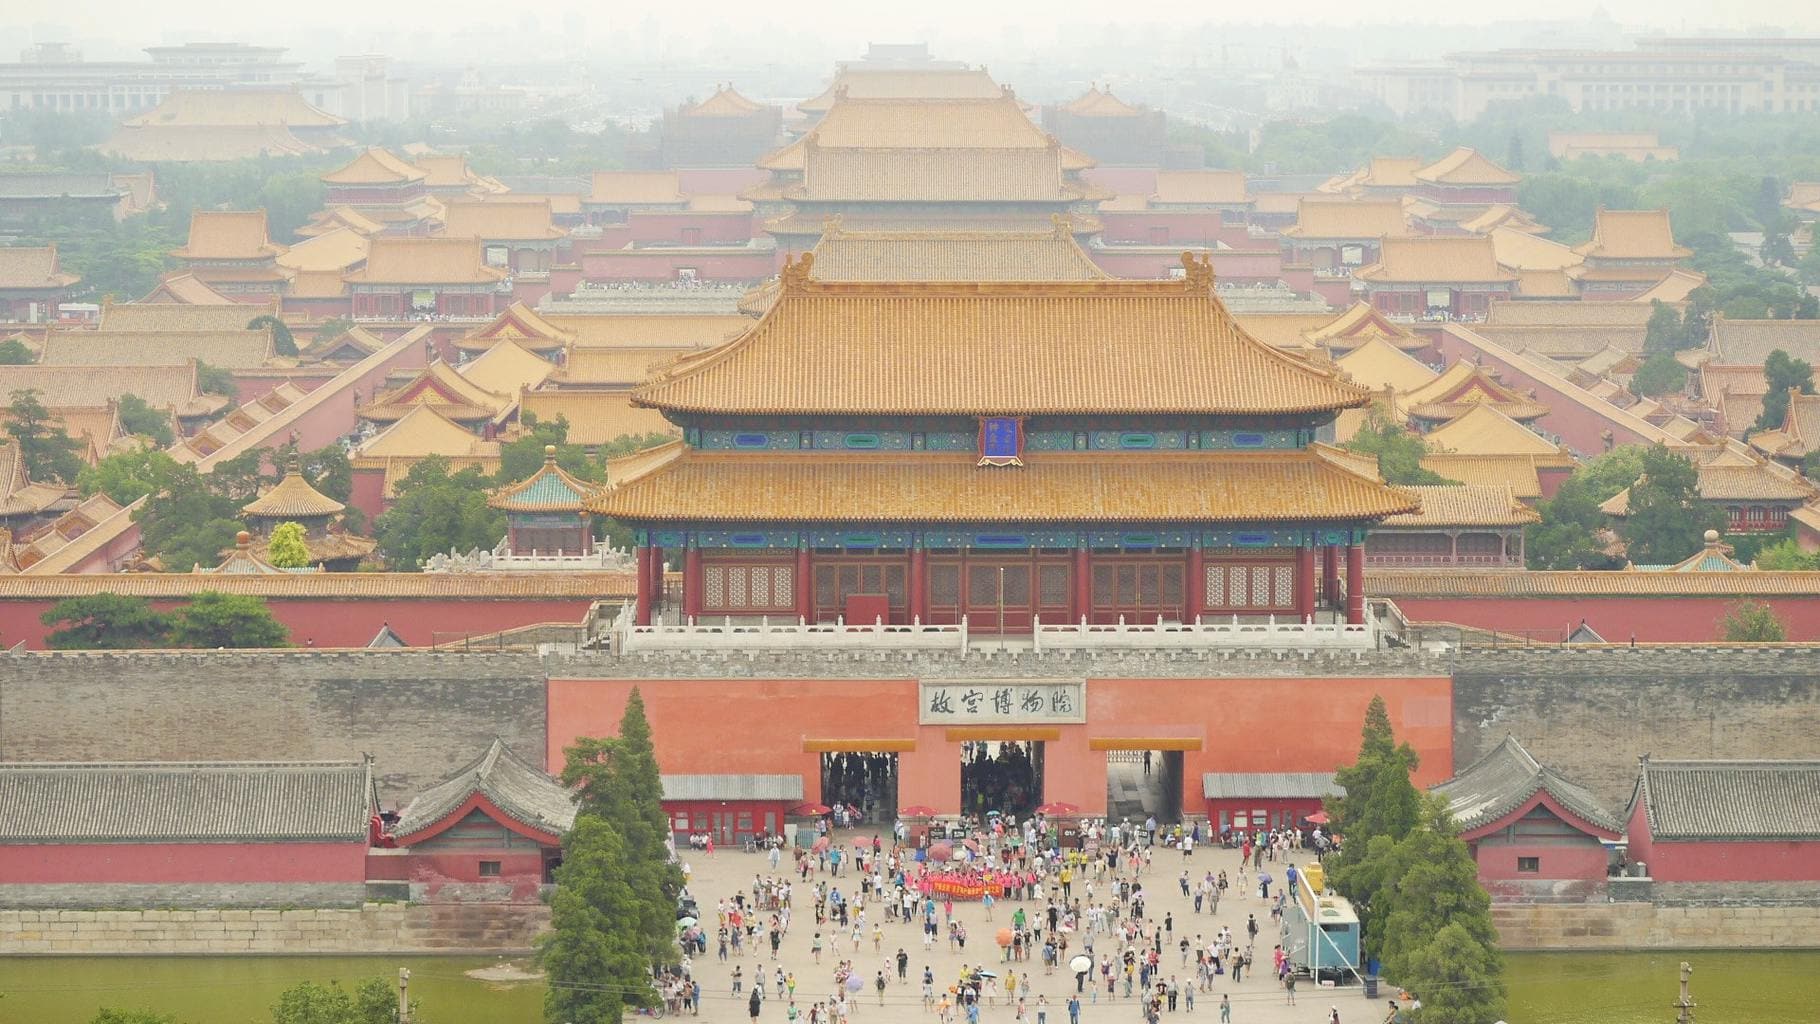 Beijing’s Forbidden City hidden behind the smog